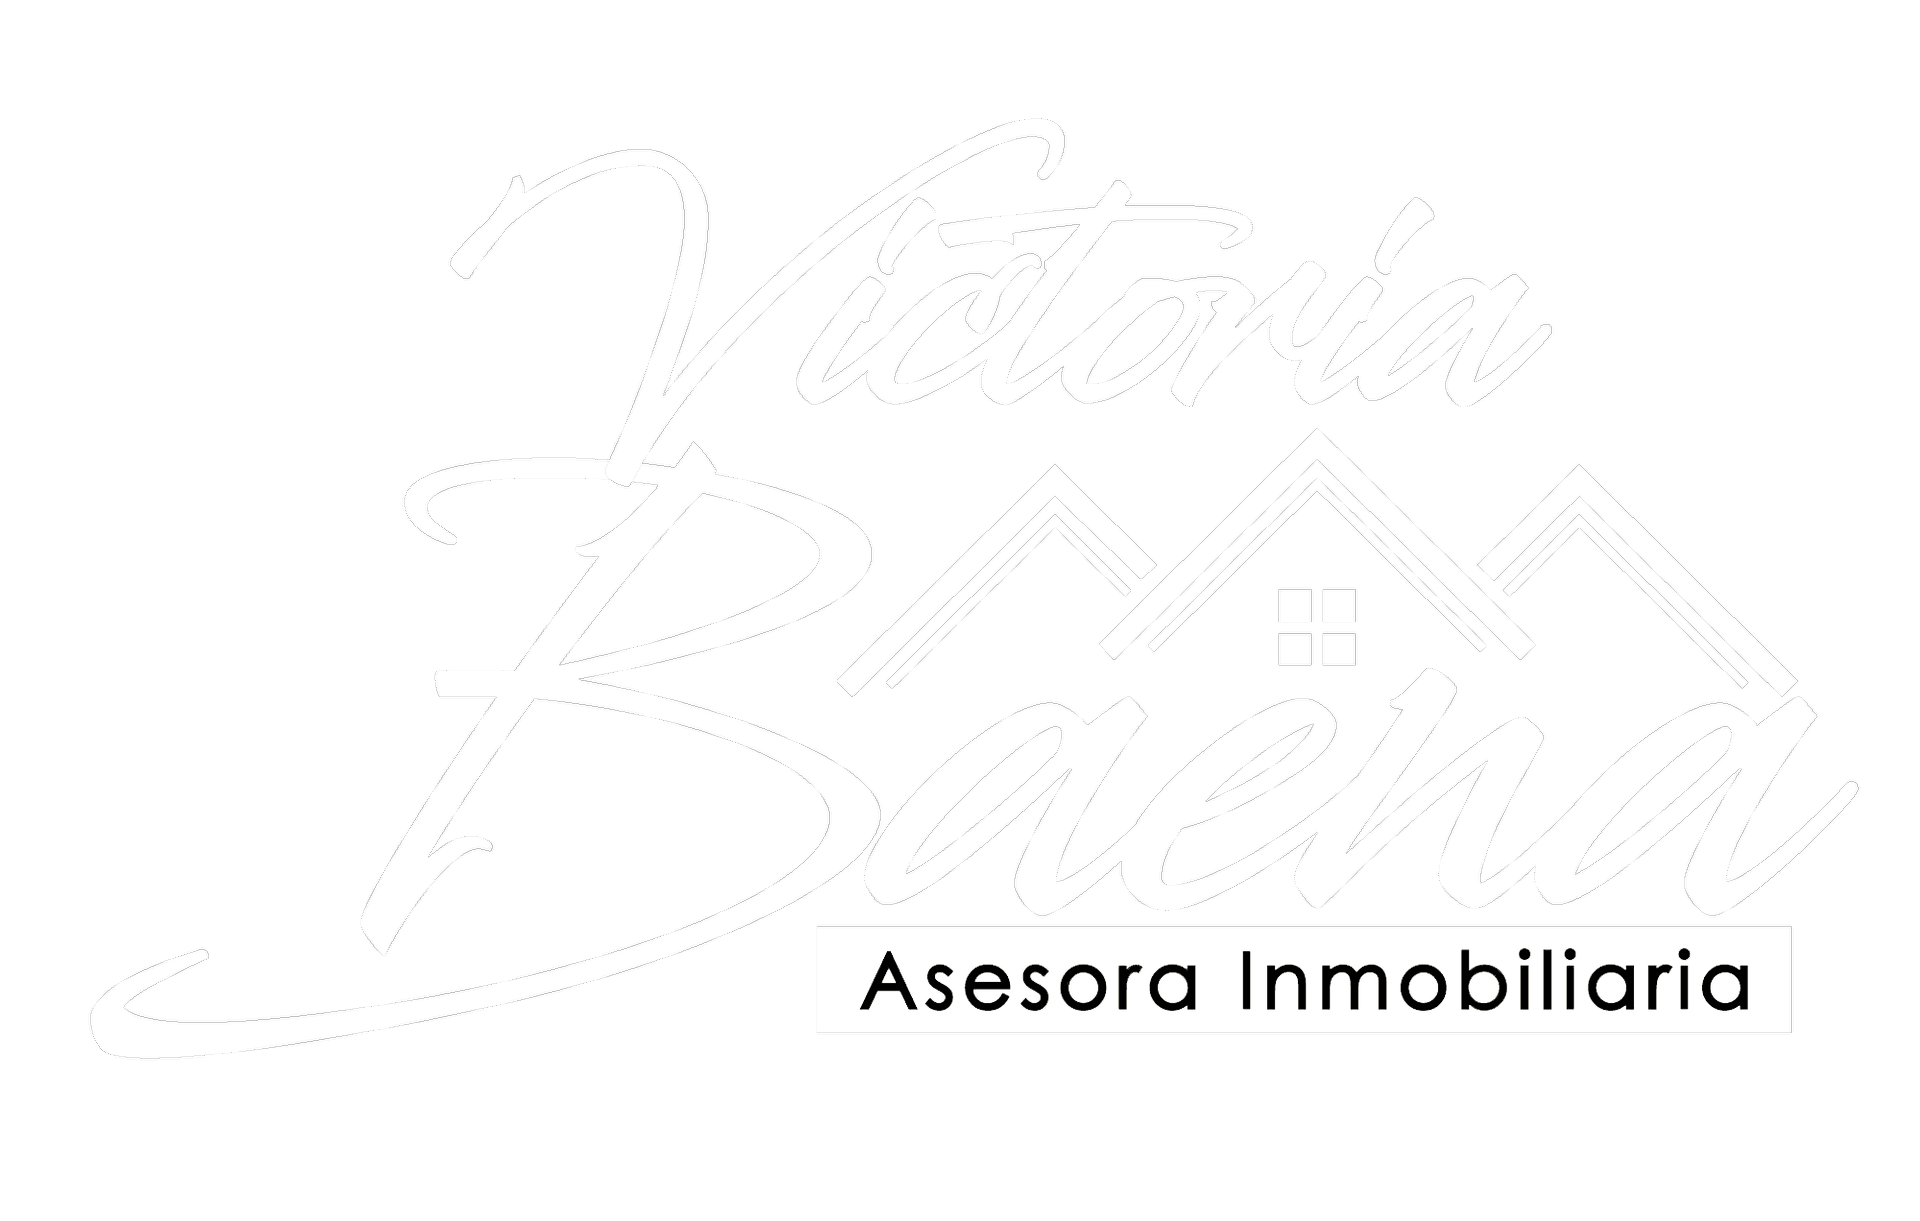 Victoria Baena - Asesora Inmobiliaria Mairena del Aljarafe - Logo Blanco